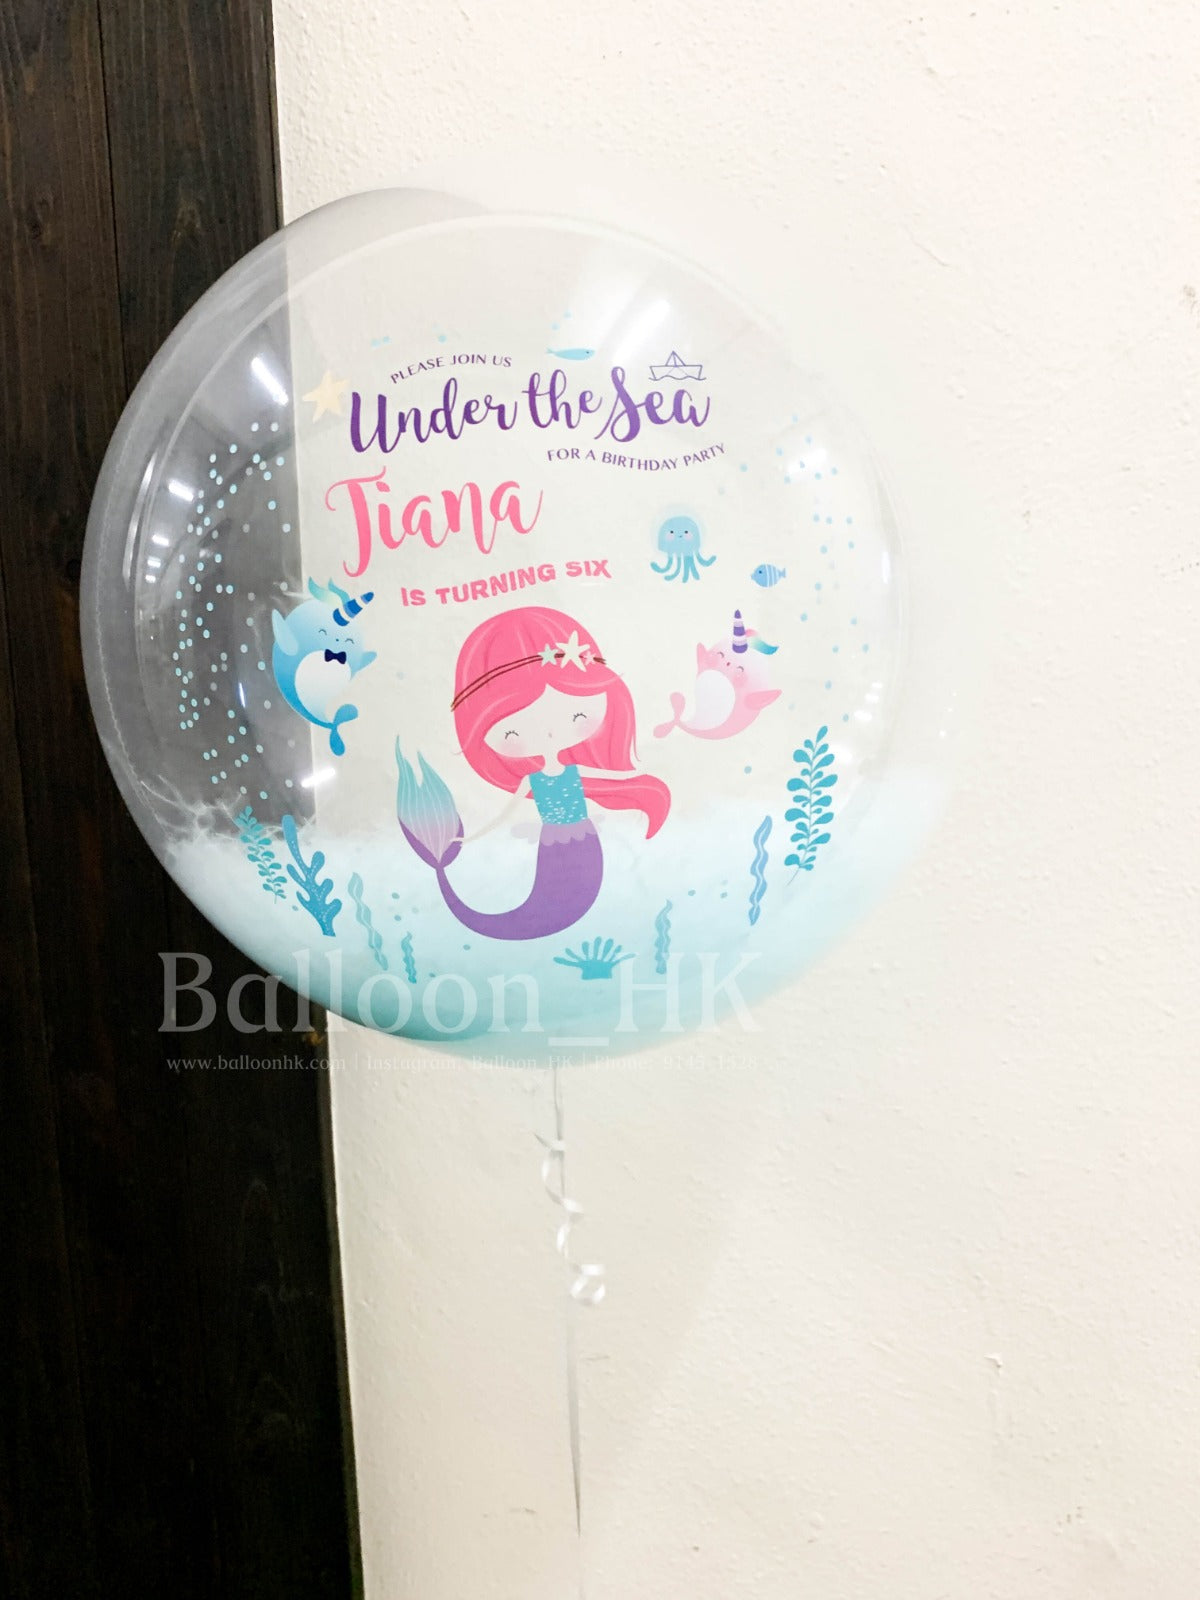 彩印水晶羽毛氣球 - Mermaid (3天預訂)